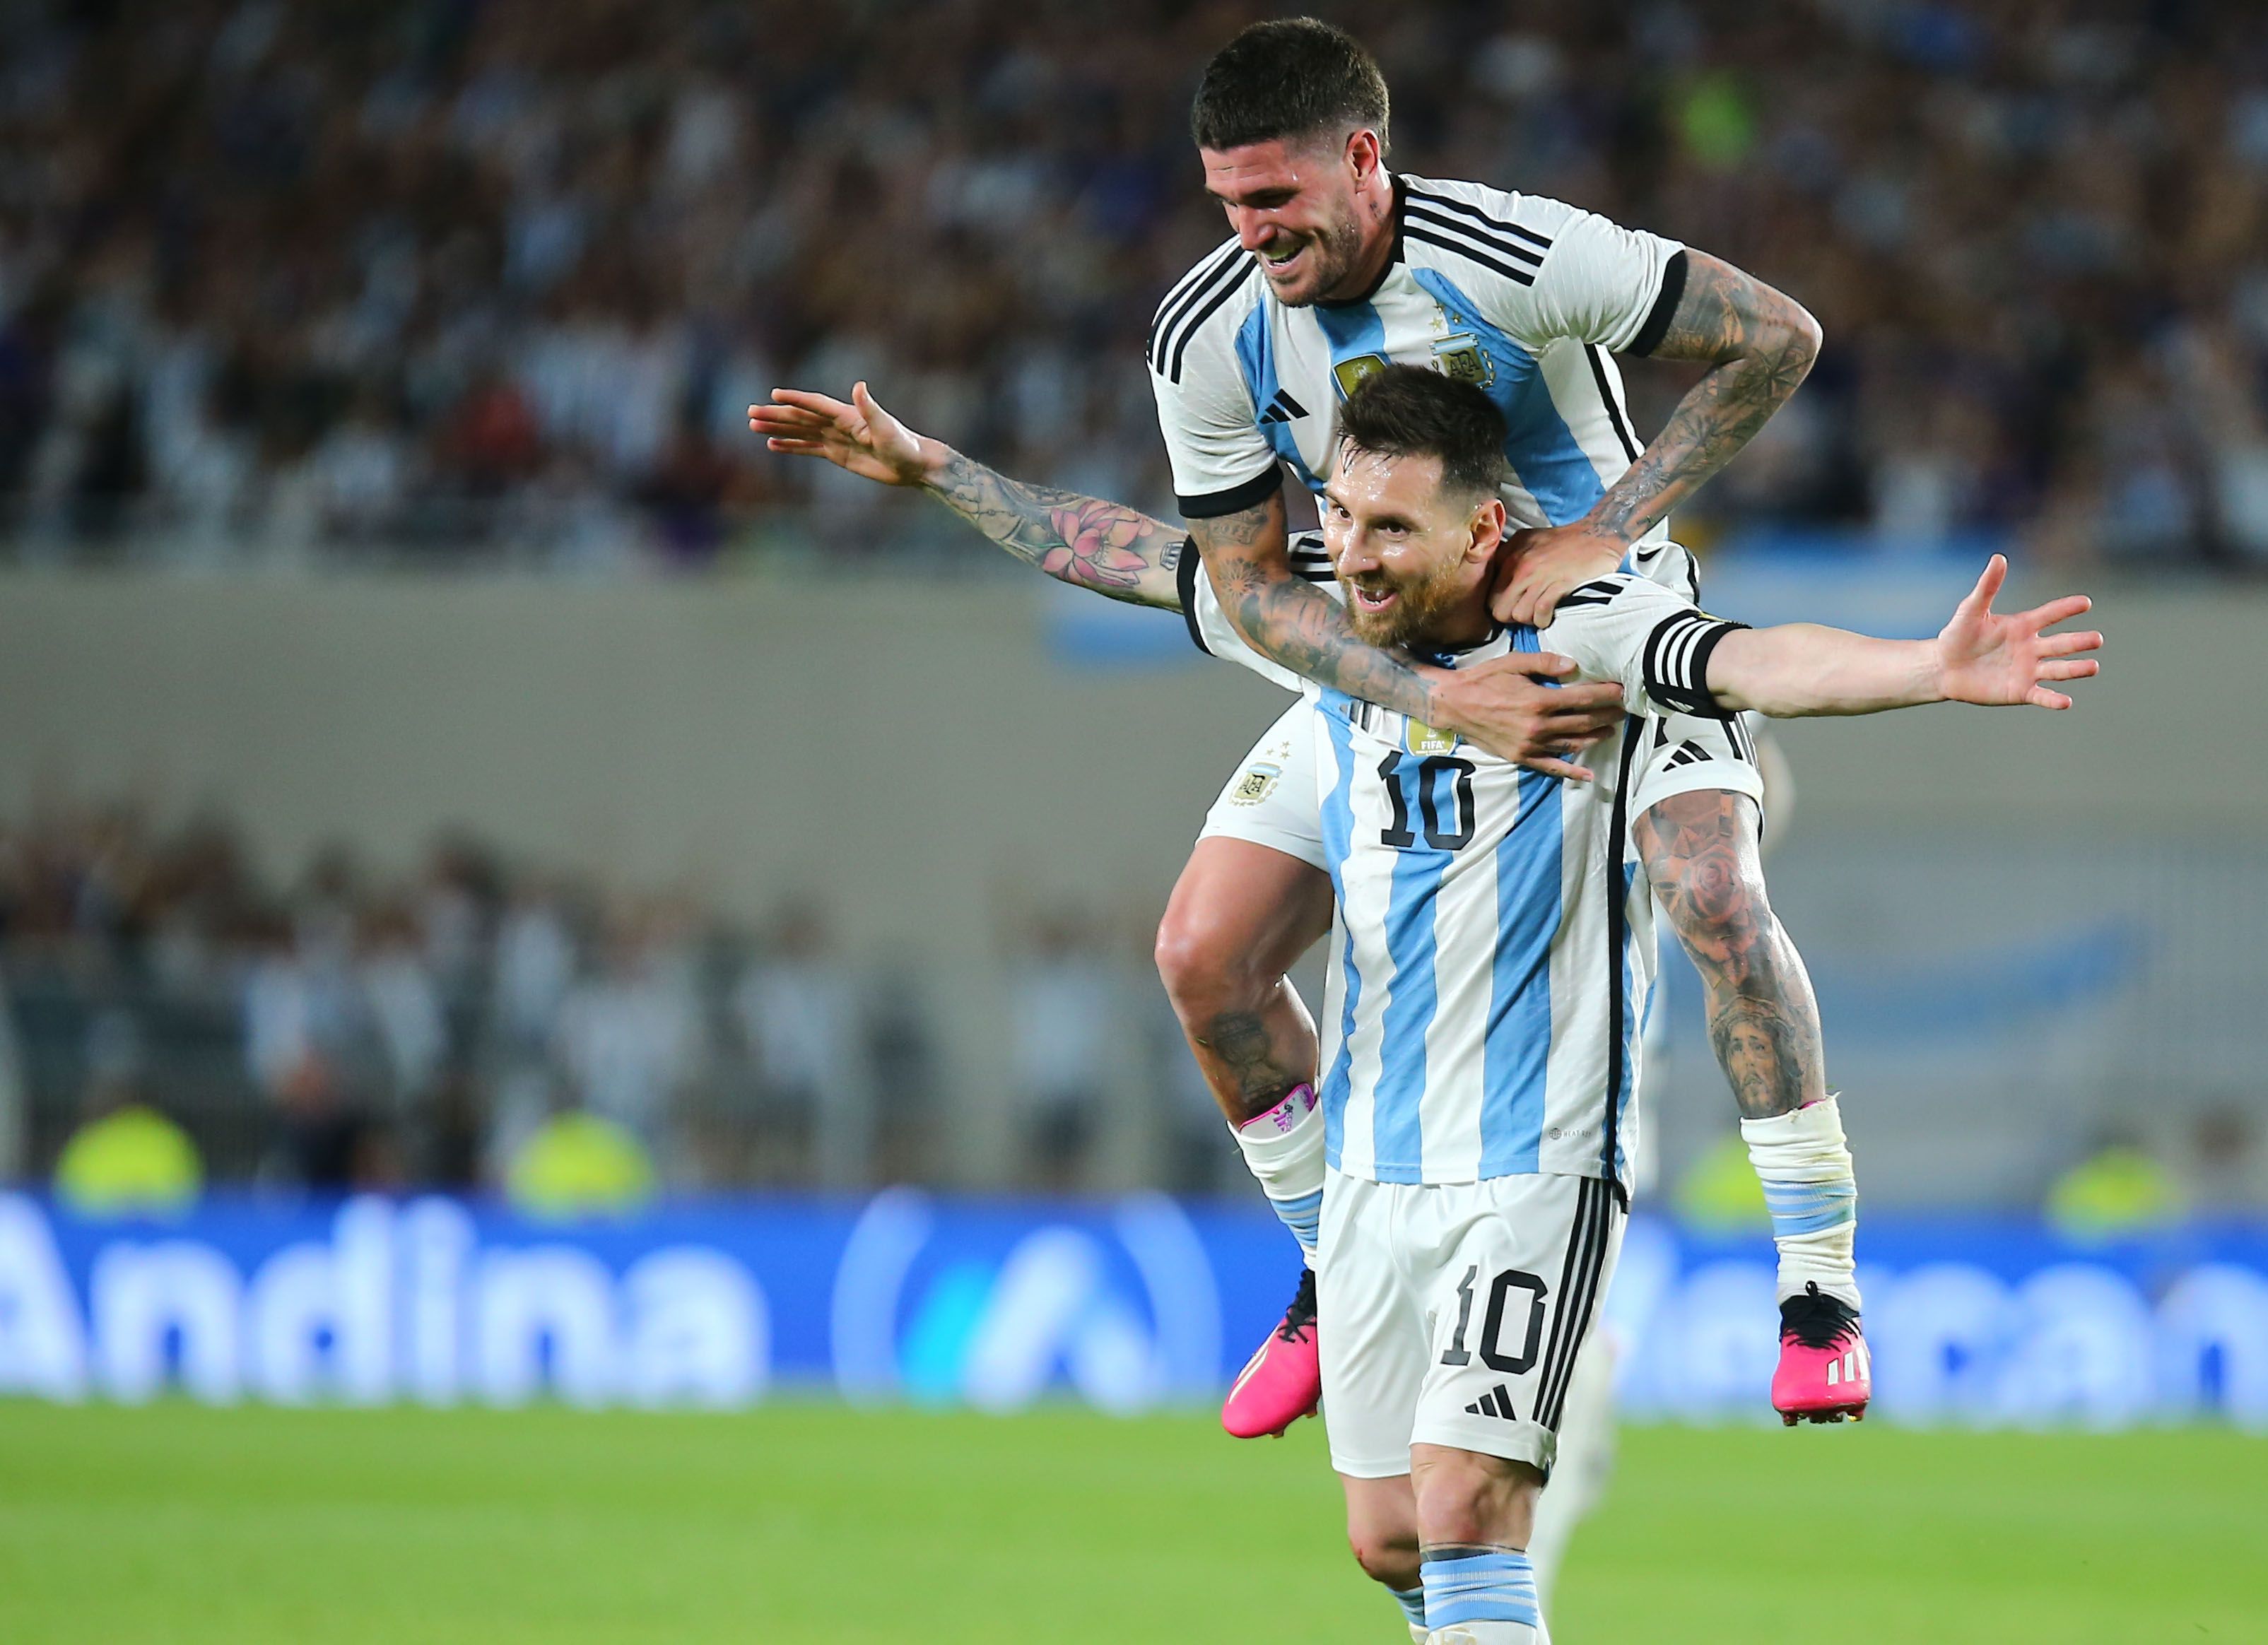   Prediksi Argentina vs Curacao: Messi akan Cetak Gol ke-100  untuk Timnas Argentina?